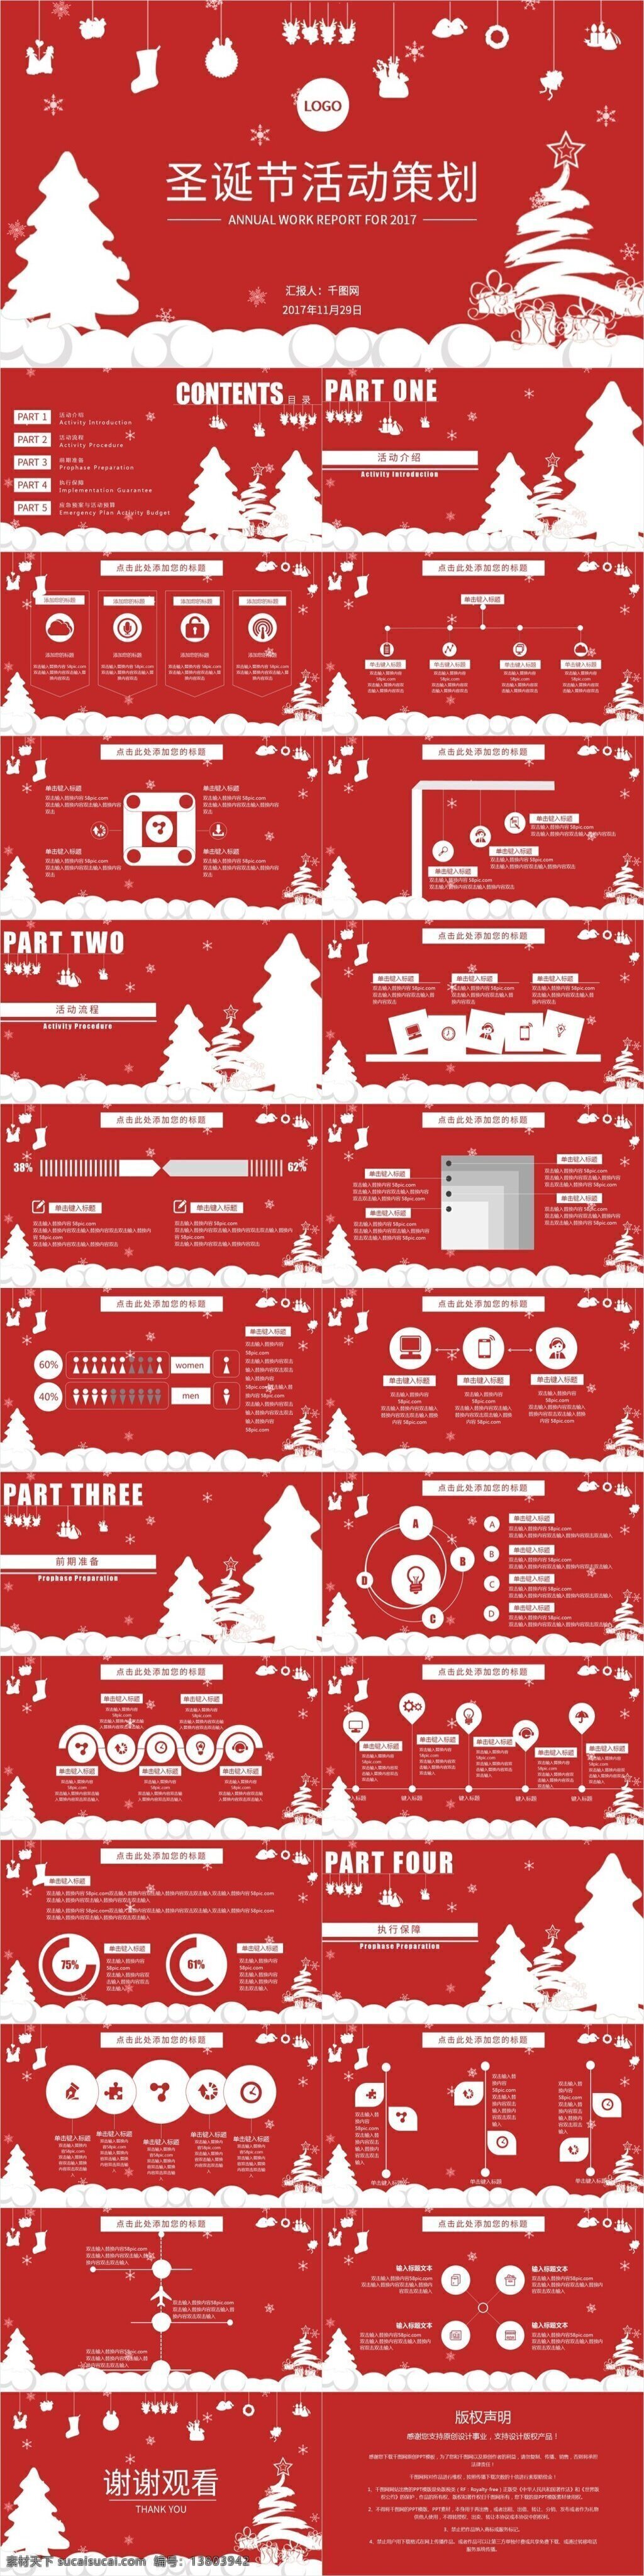 红 白 可爱 圣诞节 市场部 活动策划 模板 红白 圣诞树 挂饰 金融业 多图表